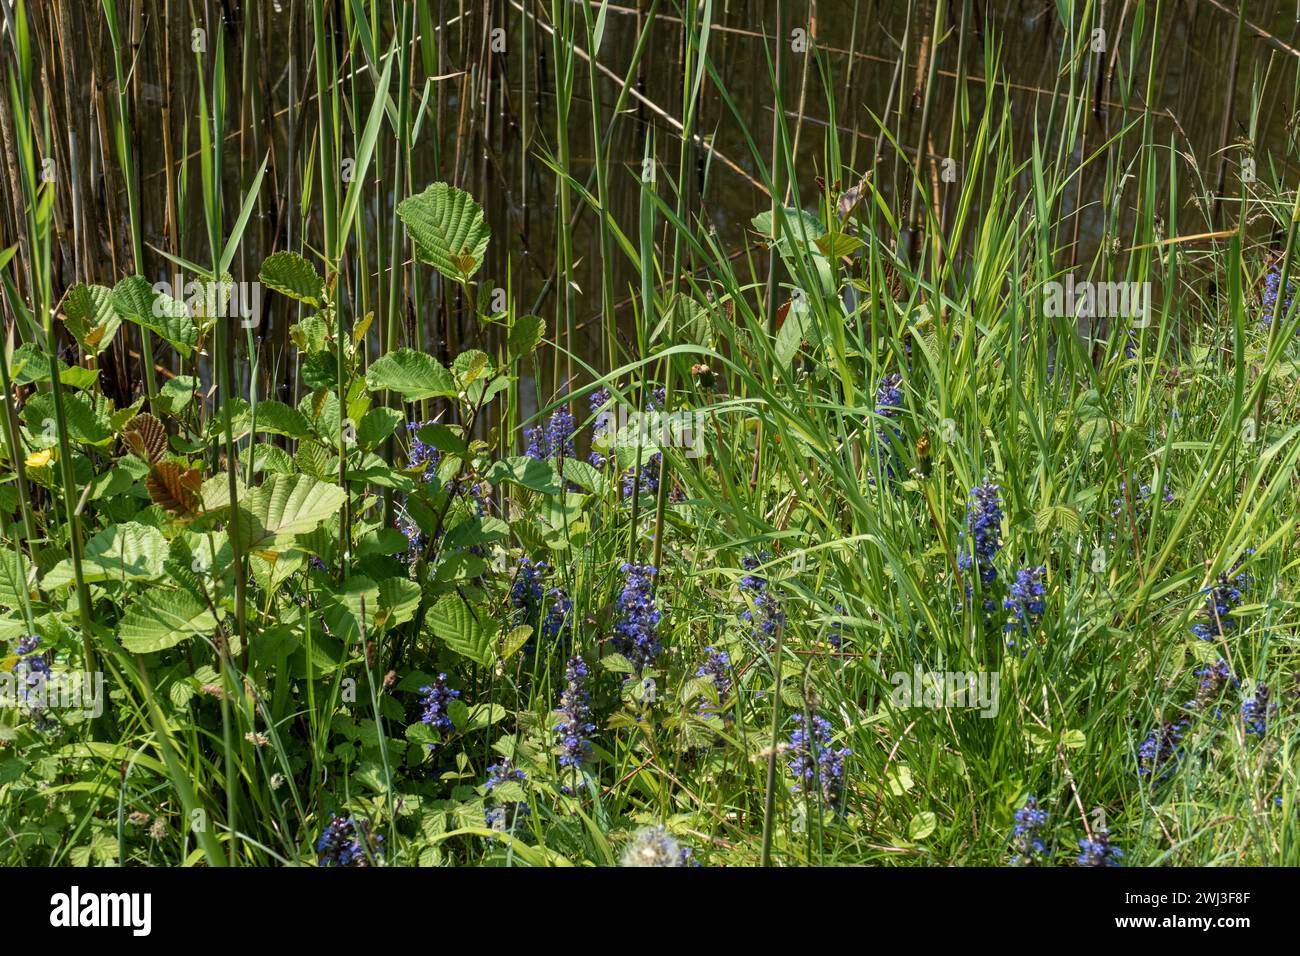 Kriechender Günsel mit blauen und violett farbenen Blüten auf einer Wiese Foto Stock